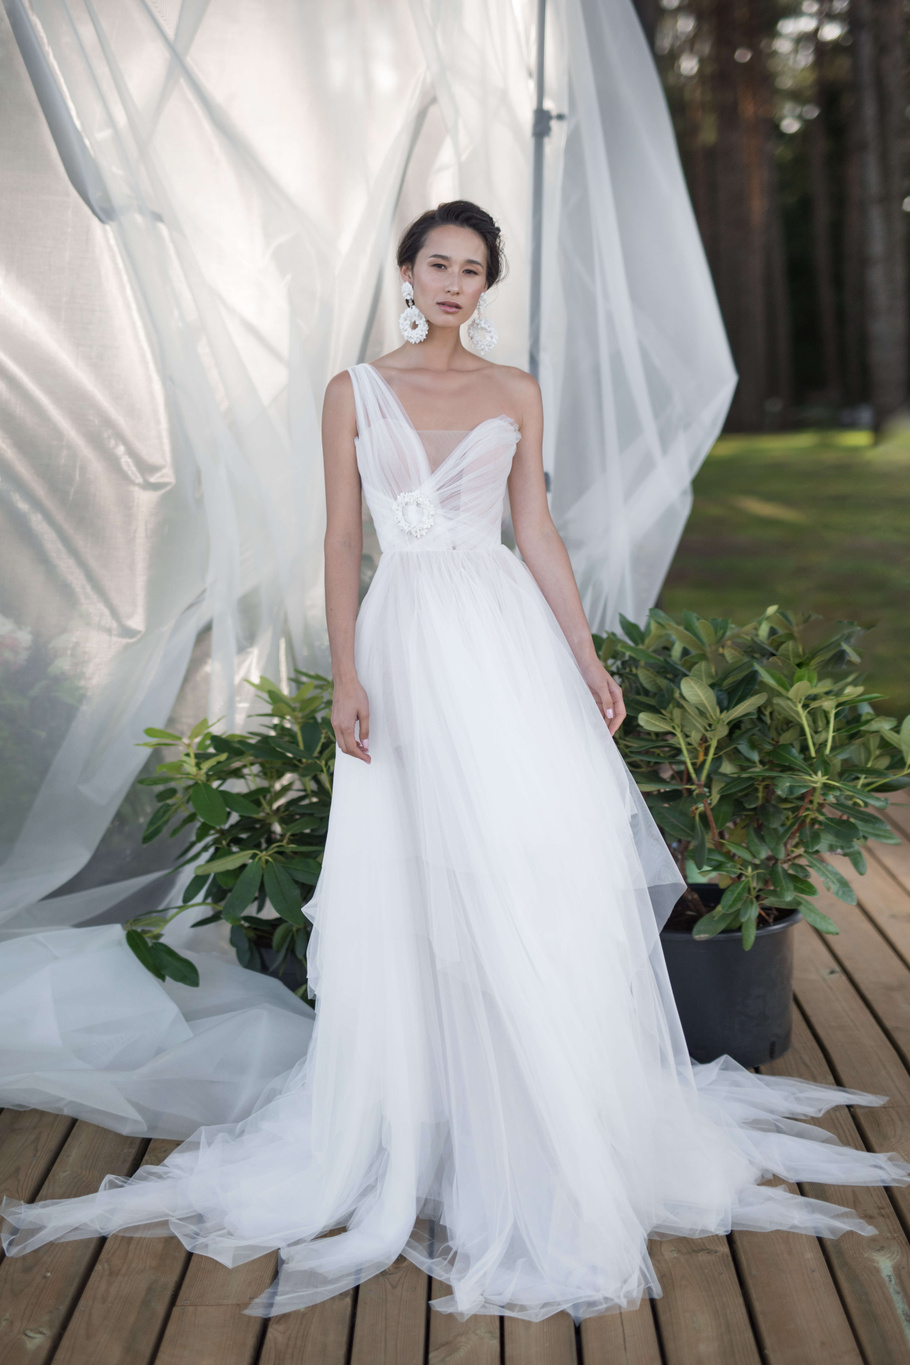 Купить свадебное платье «Ромул» Бламмо Биамо из коллекции Нимфа 2020 года в Воронеже